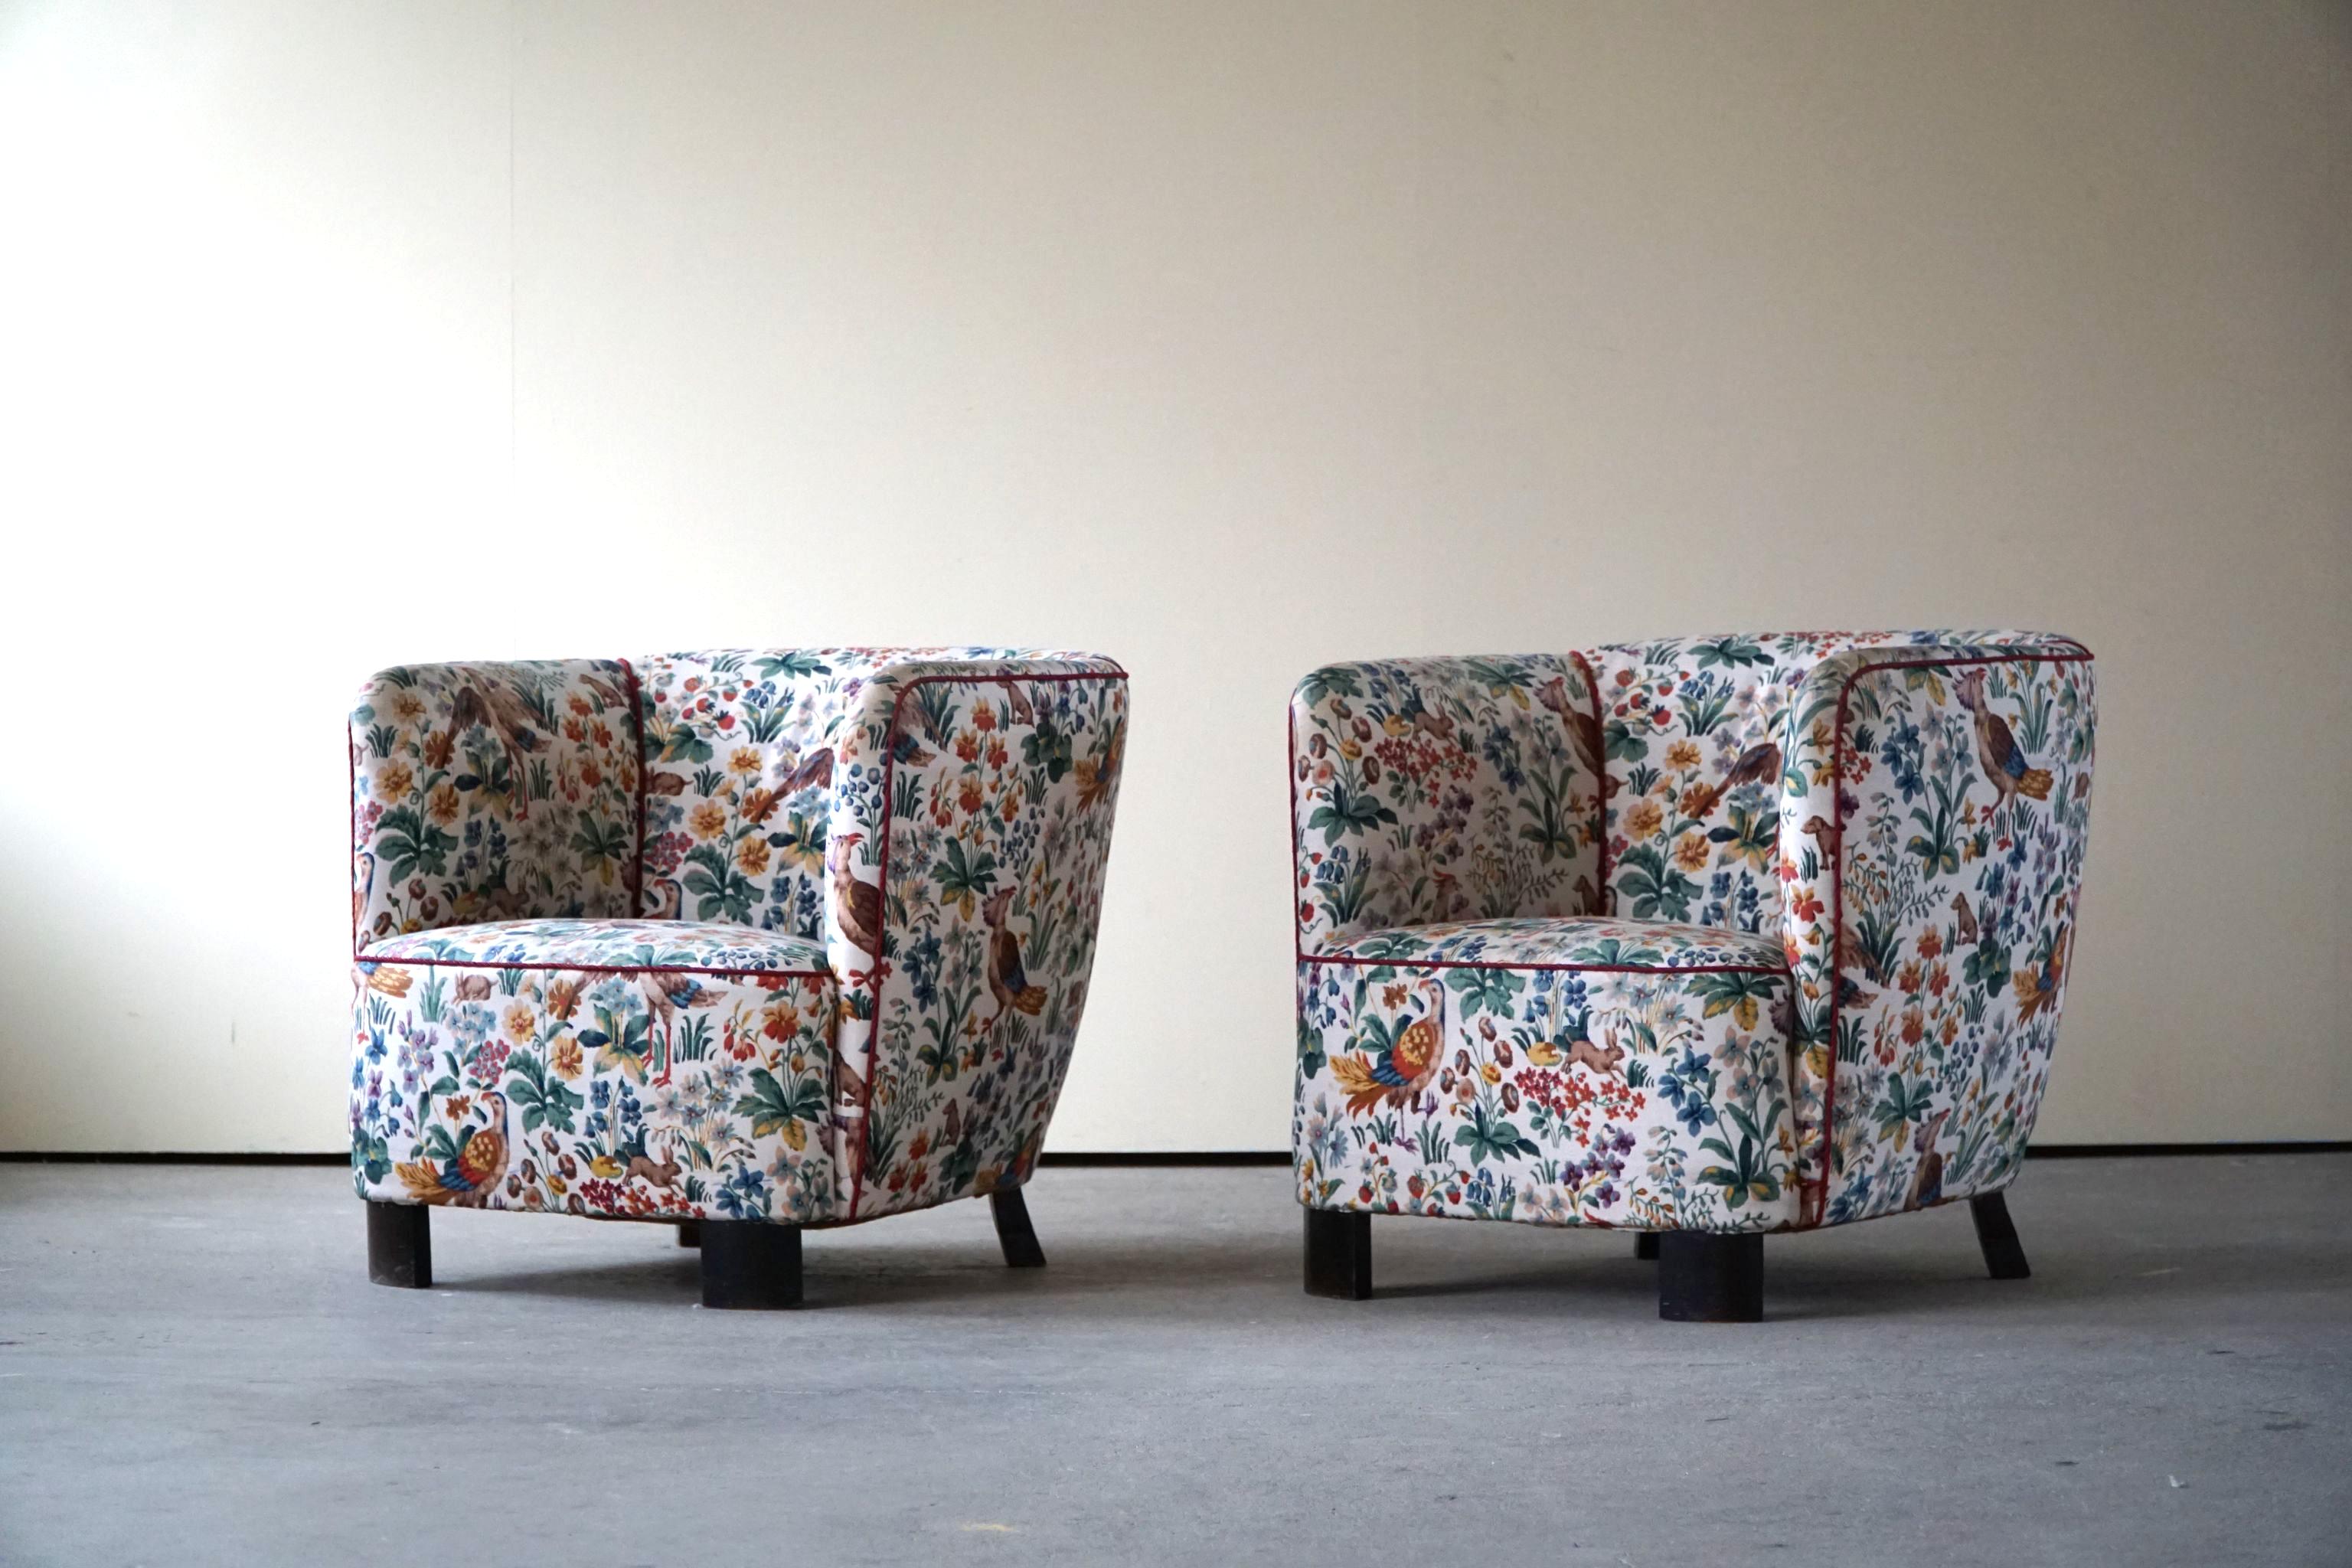 Ein seltenes bequemes Sesselpaar mit schönen Kurven. Originalstoff mit dekorativen Vogelmotiven, hergestellt von einem erfahrenen dänischen Tischler in den 1940er Jahren. Diese schönen Stühle sind im Stil des dänischen Designers und Architekten